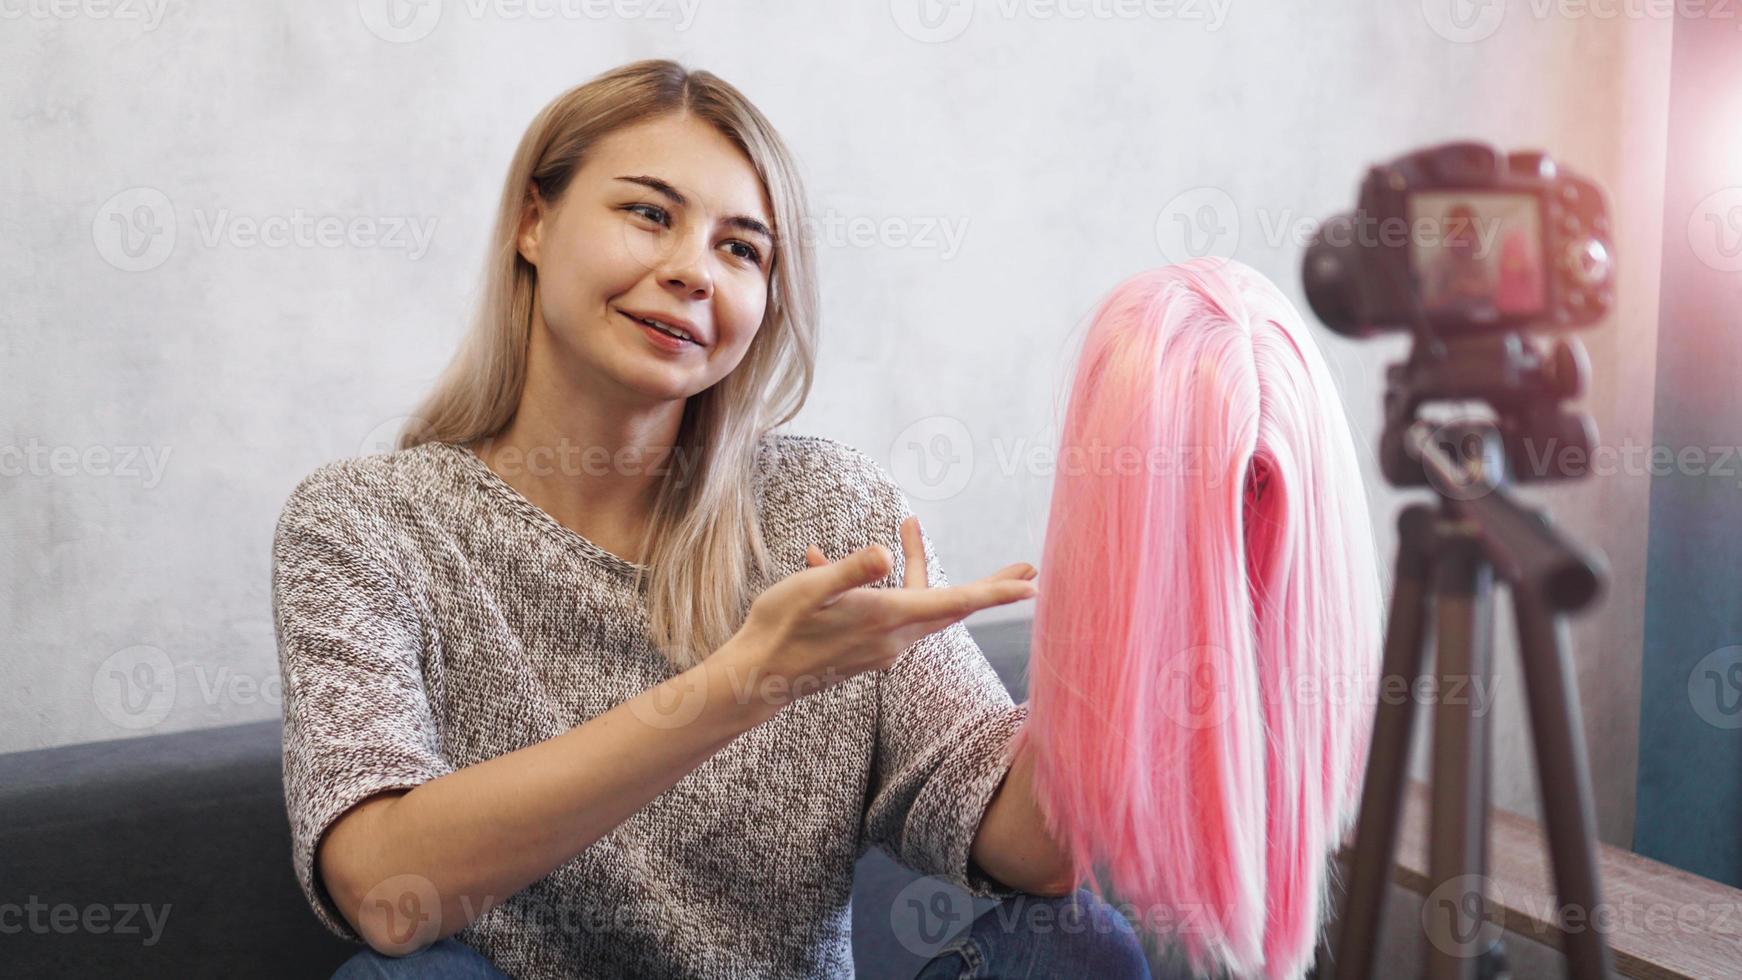 blogger donna registra video. lei mostra la parrucca rosa foto